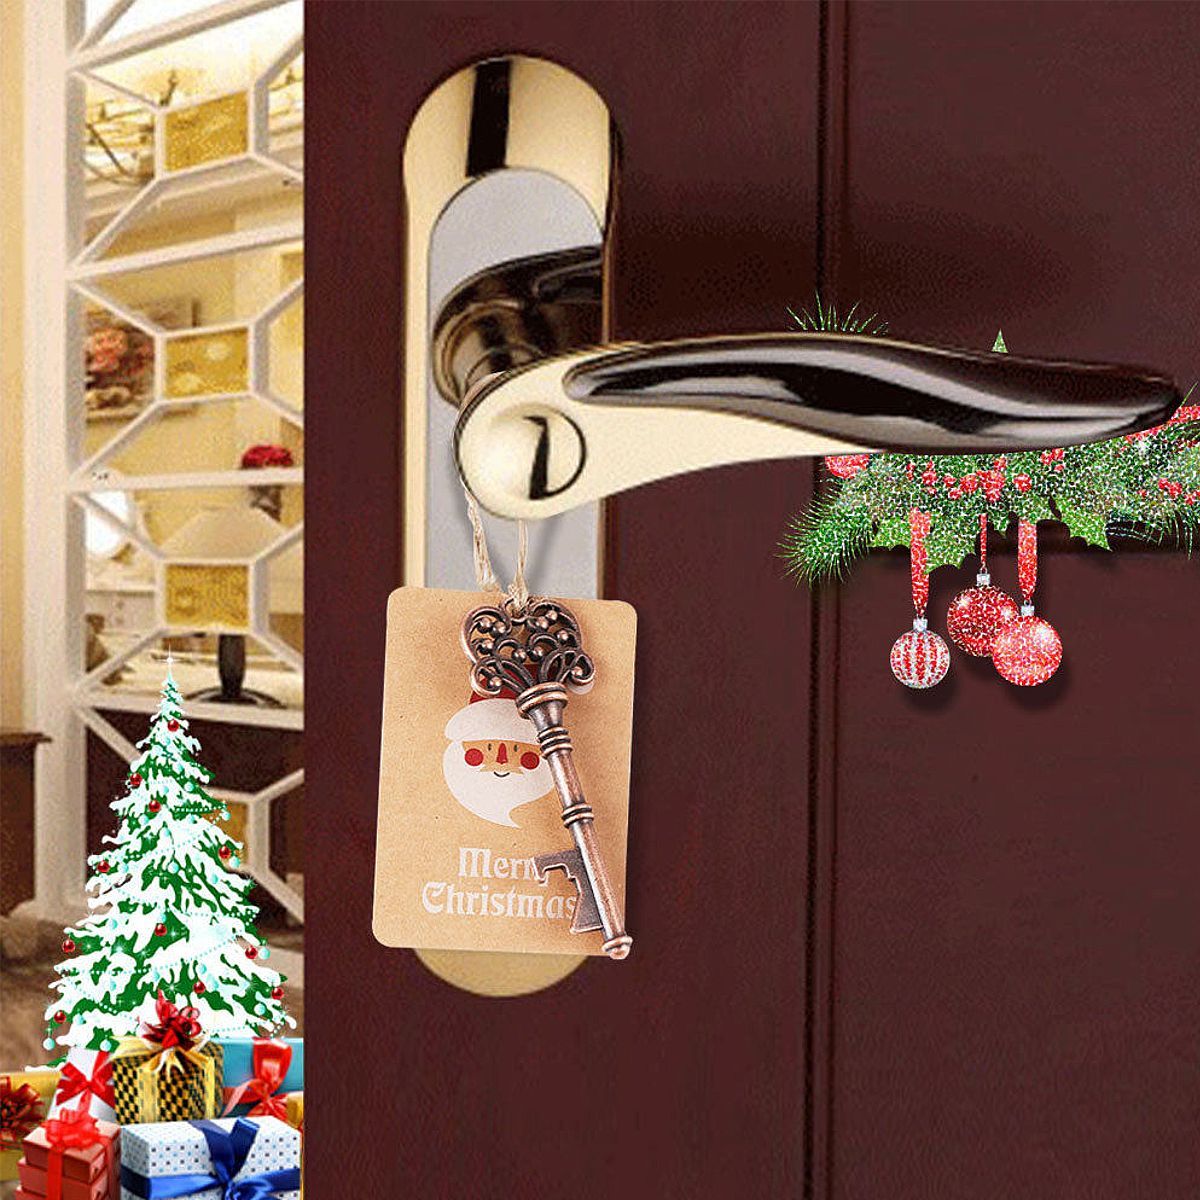 10Pcs-Xmas-Tree-Ornaments-Santa-Magic-Key-Blank-Tag-Christmas-Party-Hanging-Decorations-1397589